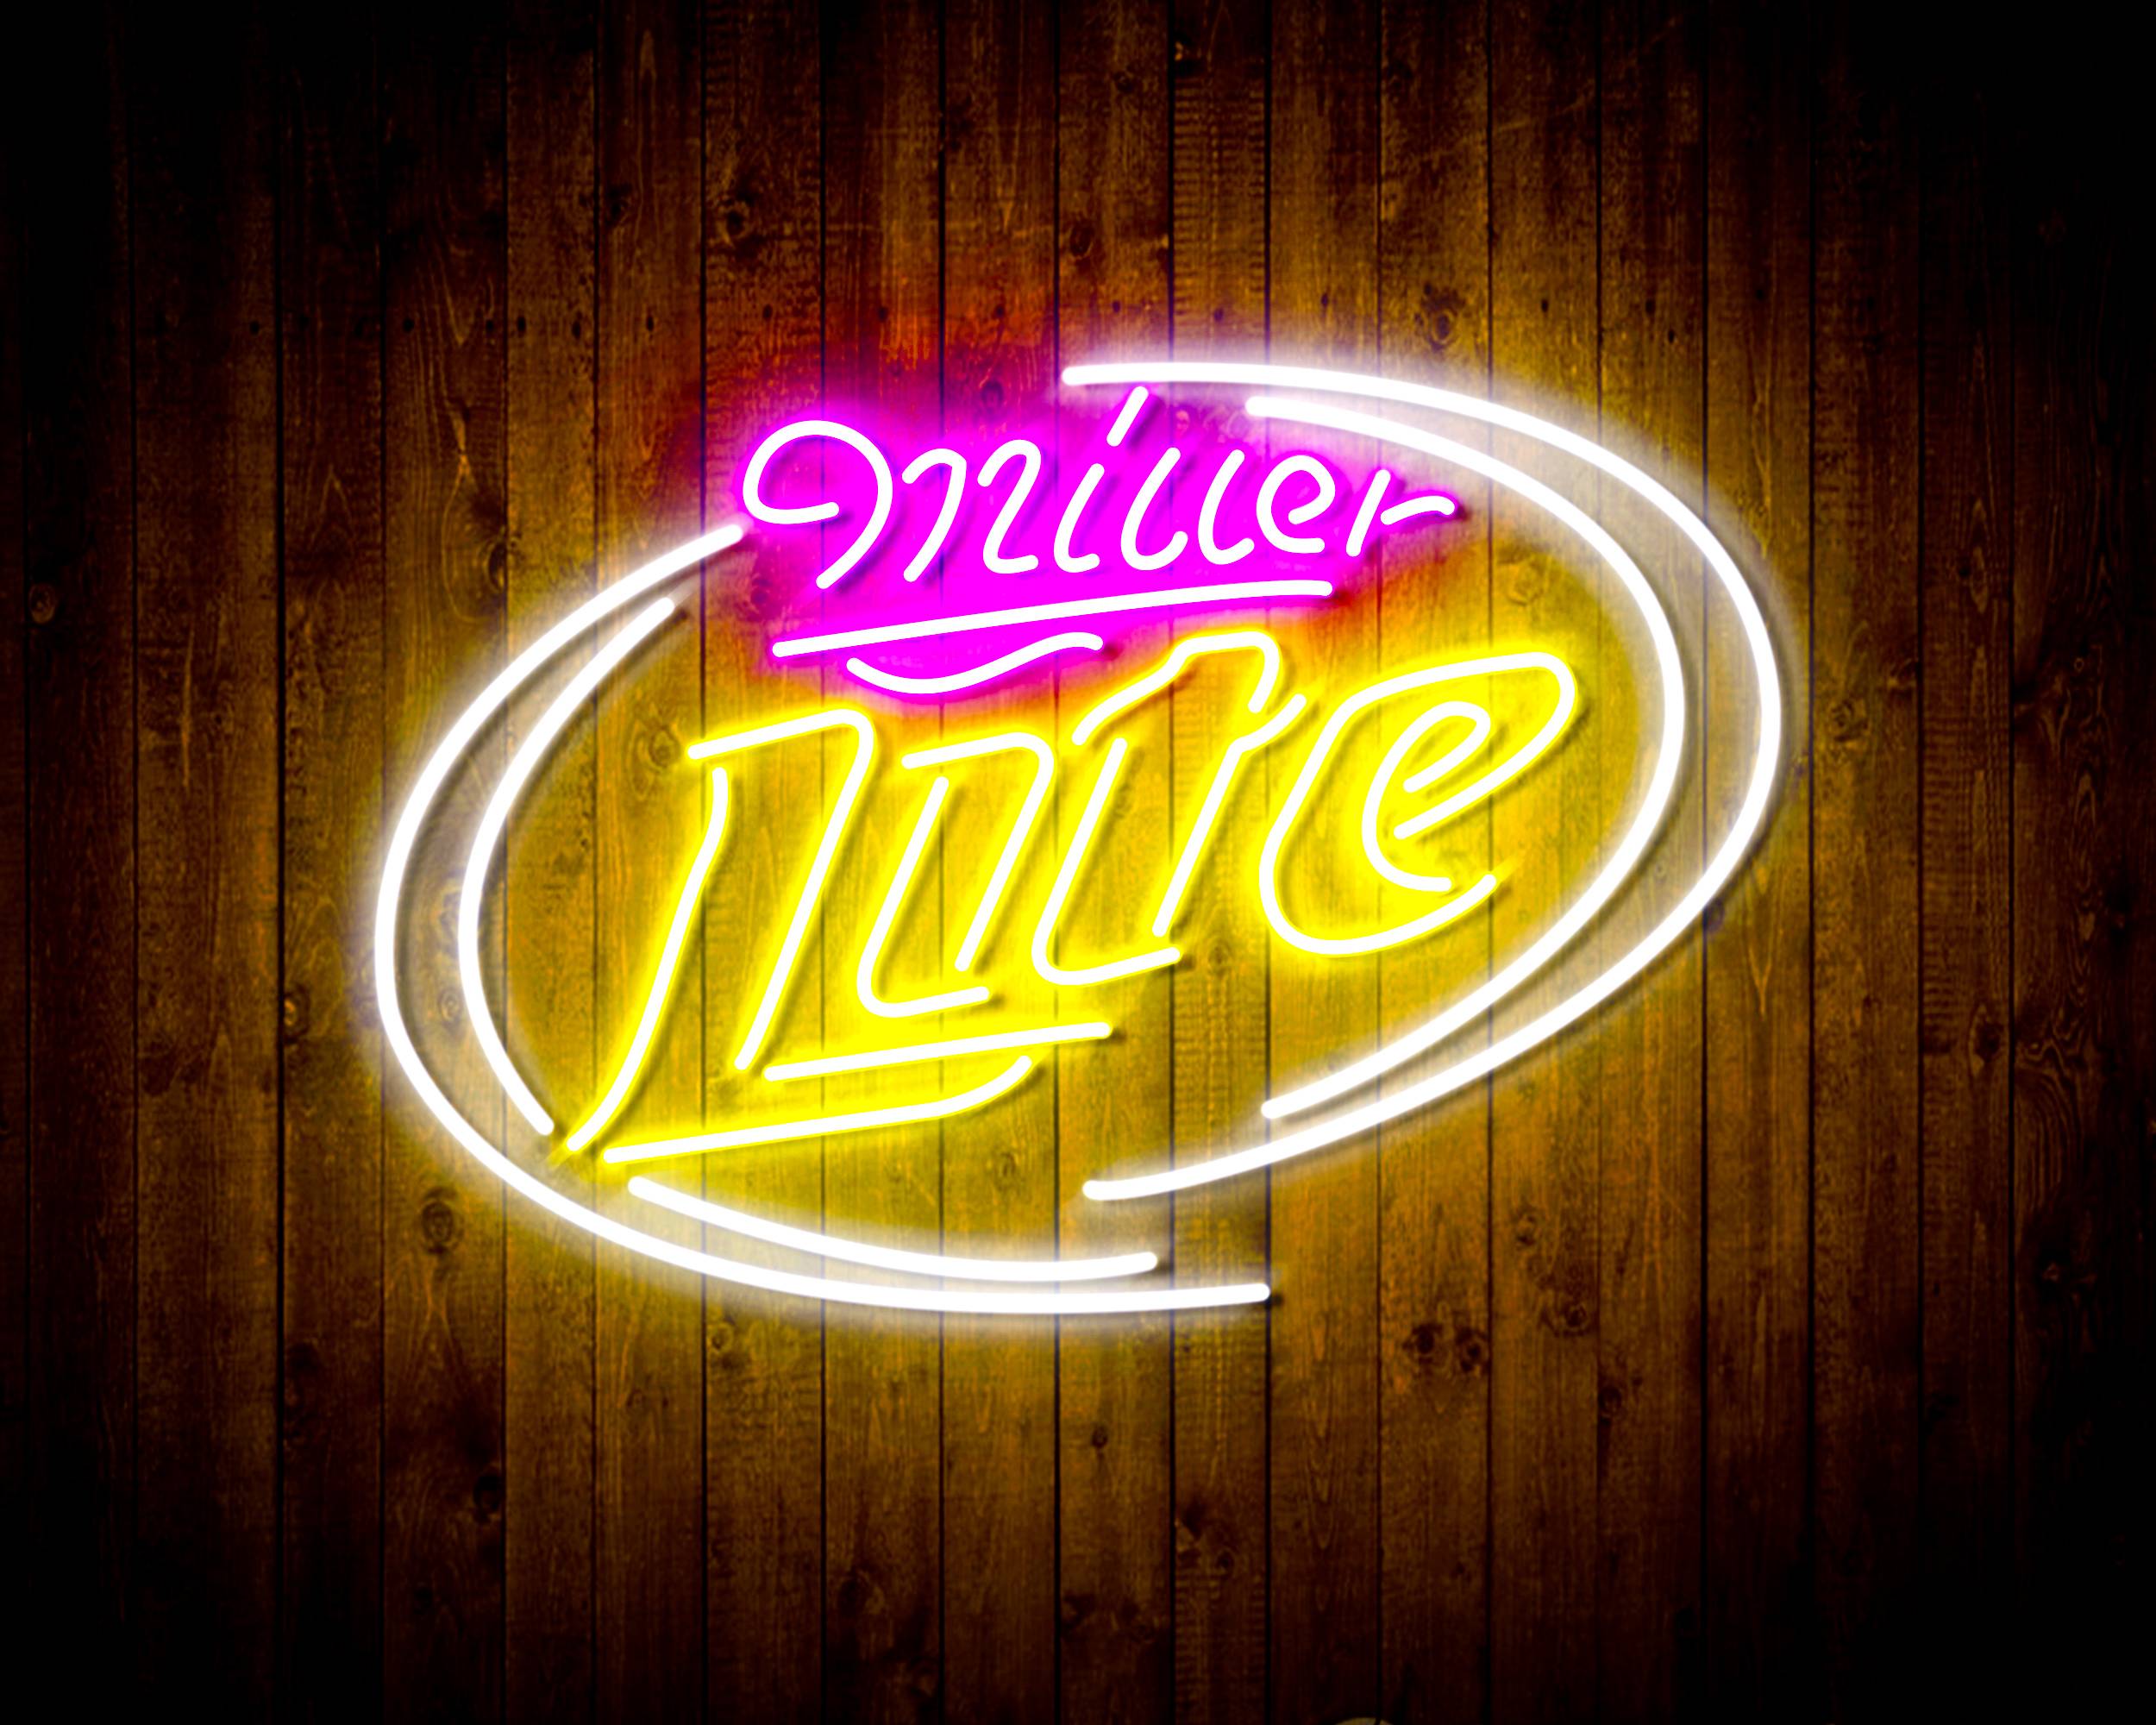 Miller Lite 2 Handmade LED Neon Light Sign